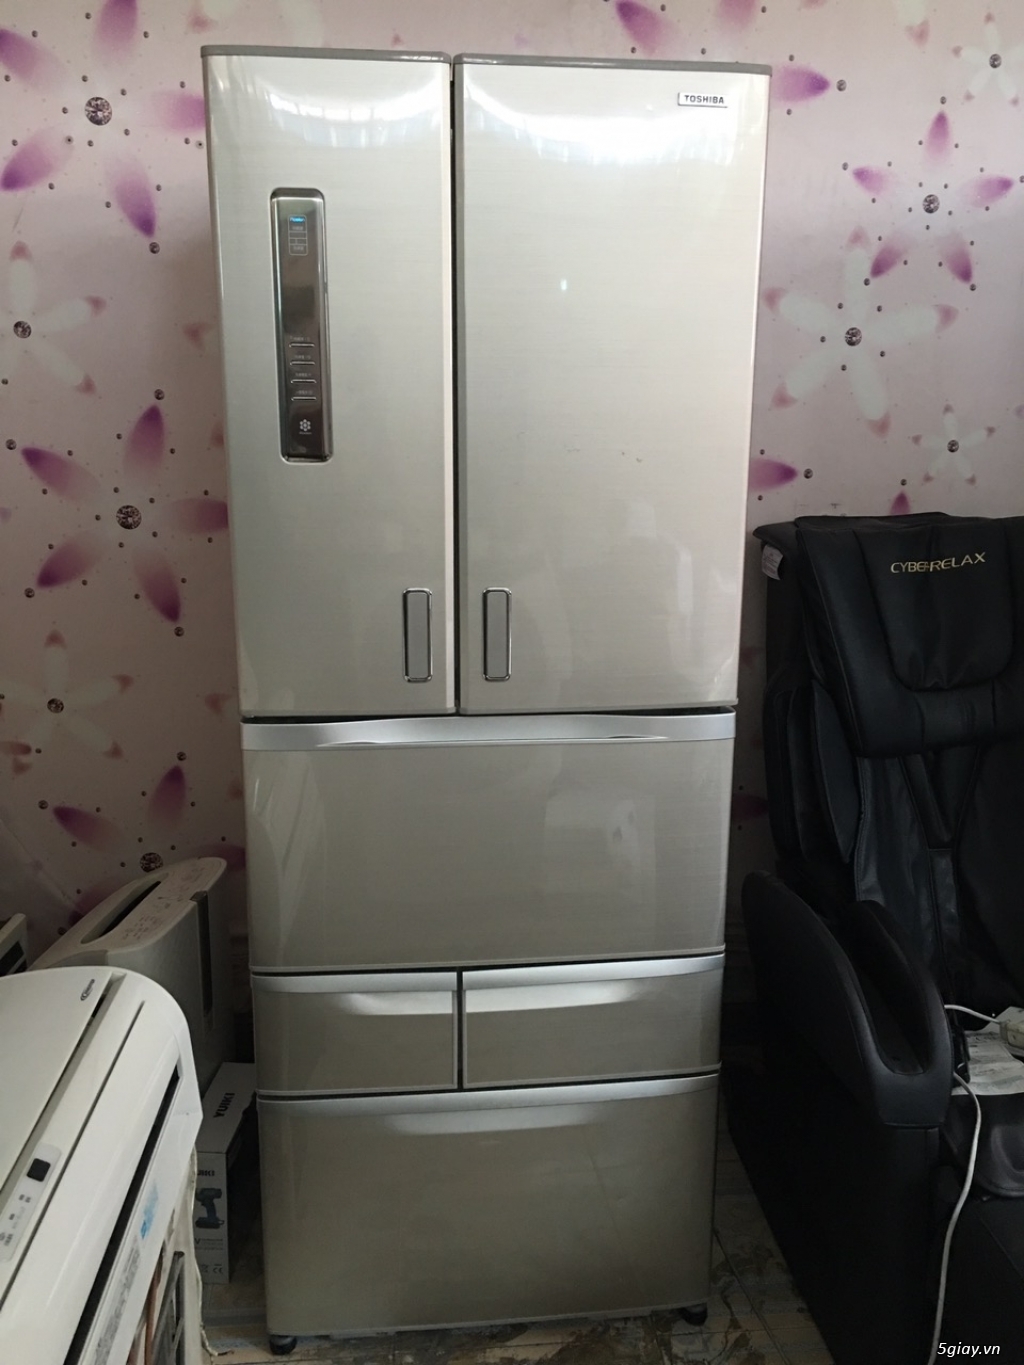 Tủ Lạnh inveter - Máy giặt Lồng Nghiêng inverter - Bếp Từ - Hàng vip...